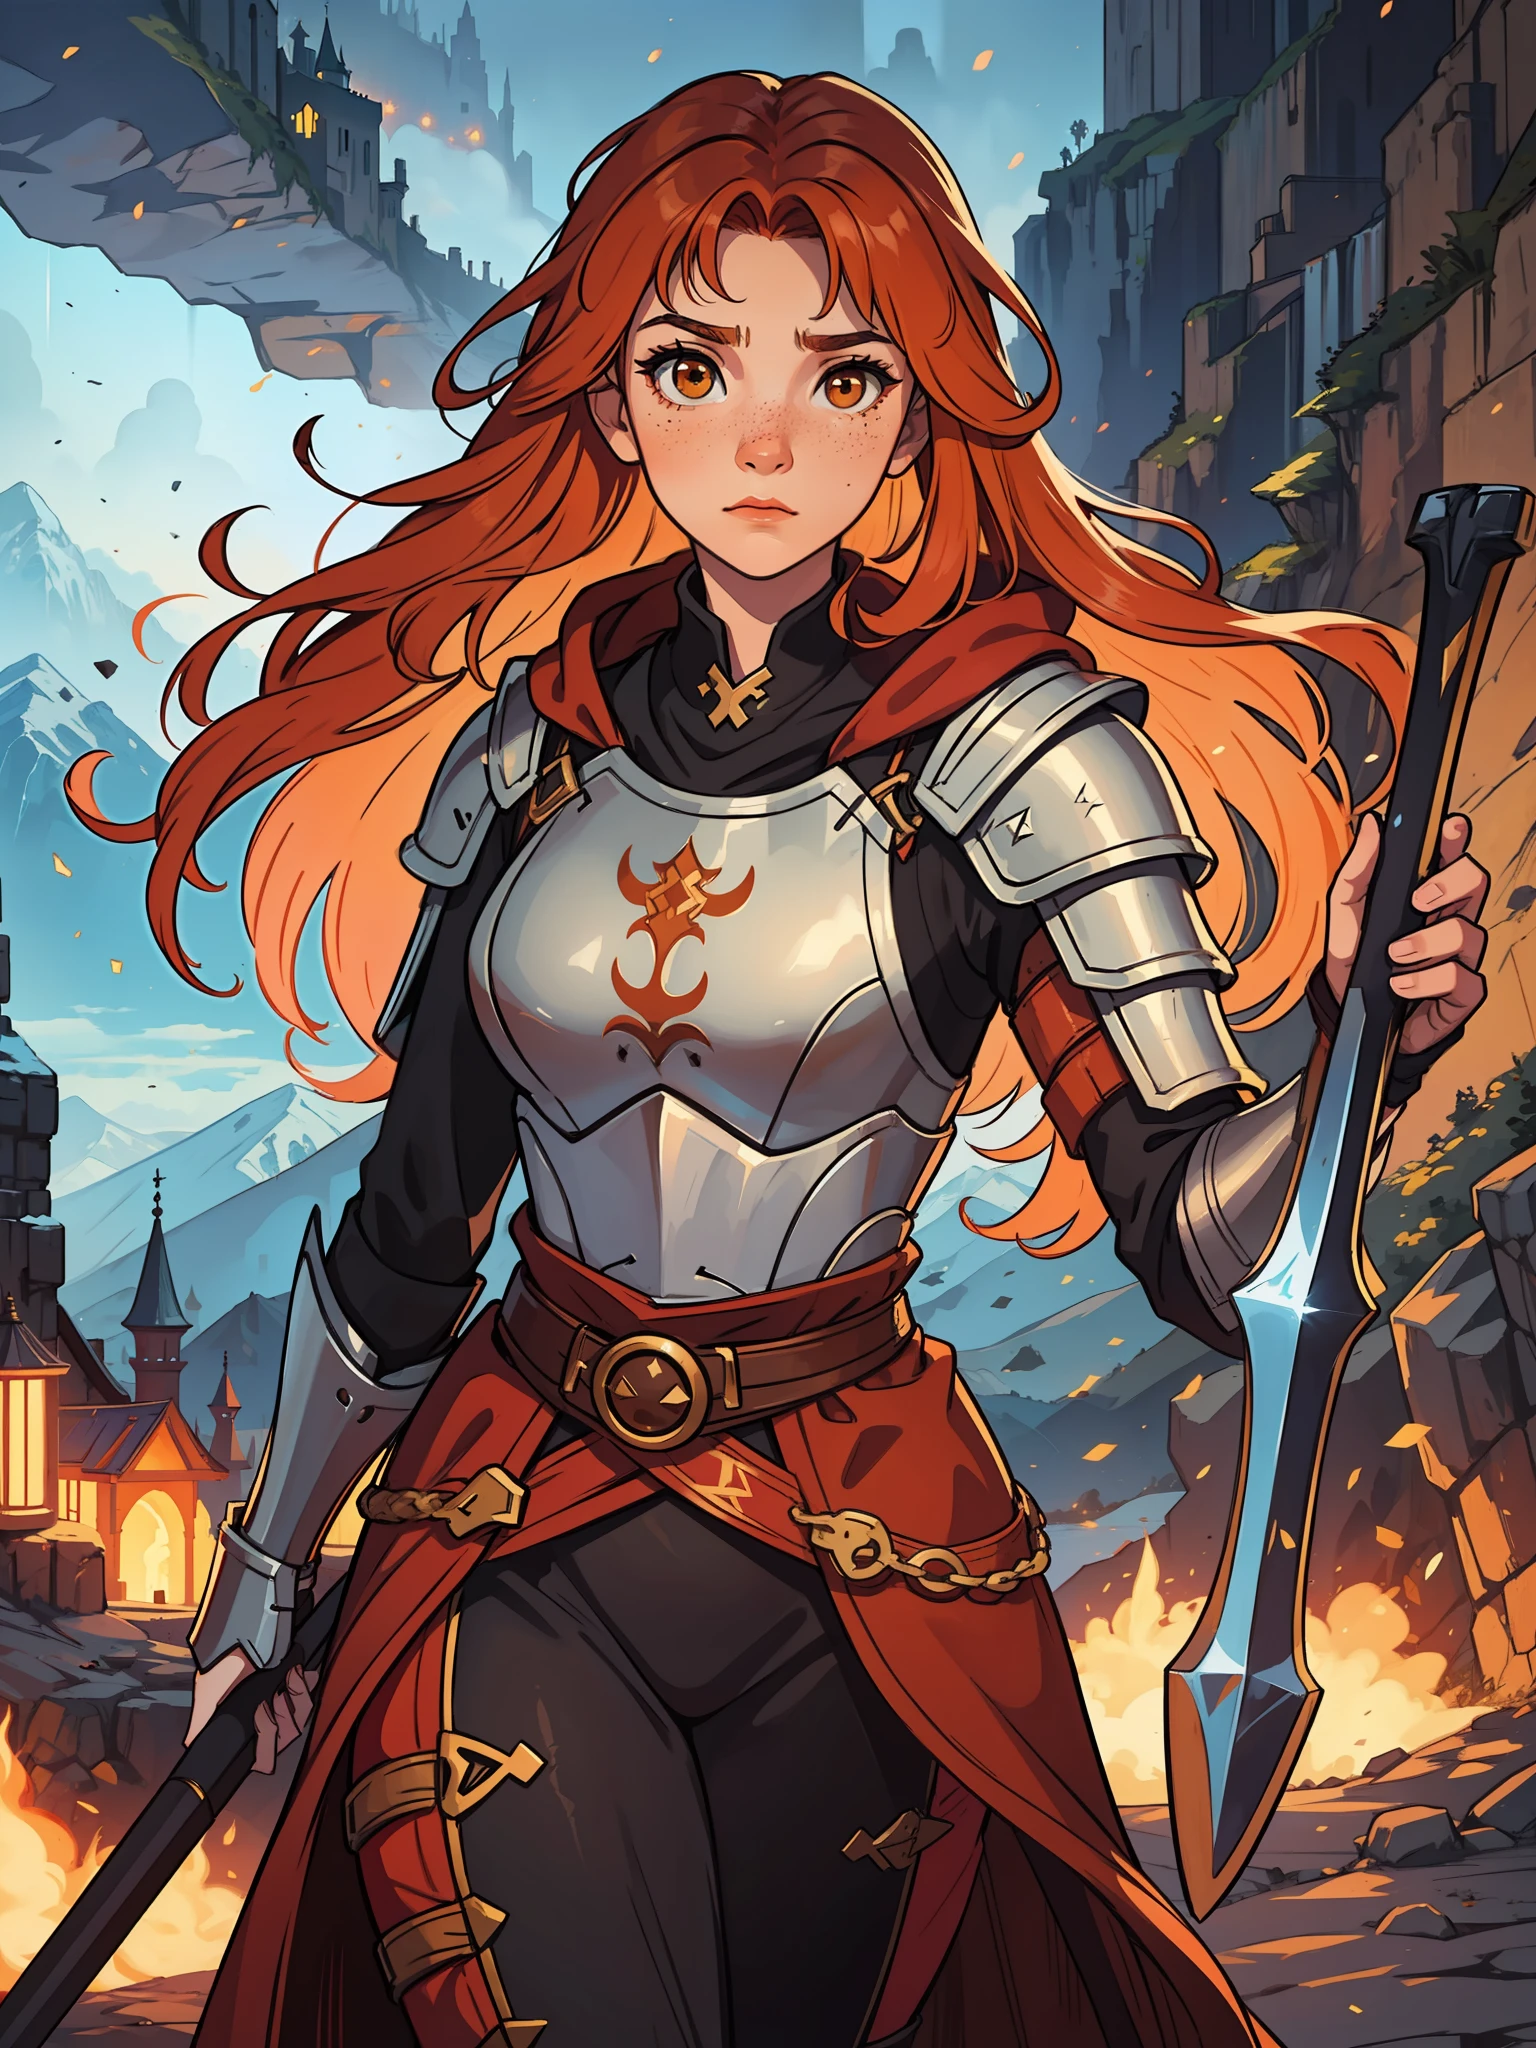 一名年輕的紅髮少女，橙色頭髮，棕色眼睛, 她有一些雀斑，看起來很勇敢, 她是中世紀角色扮演遊戲中穿著強大魔法盔甲的戰士, 充滿魔法與魔幻燈光的背景, 山堡中的輪廓燈和電影燈.